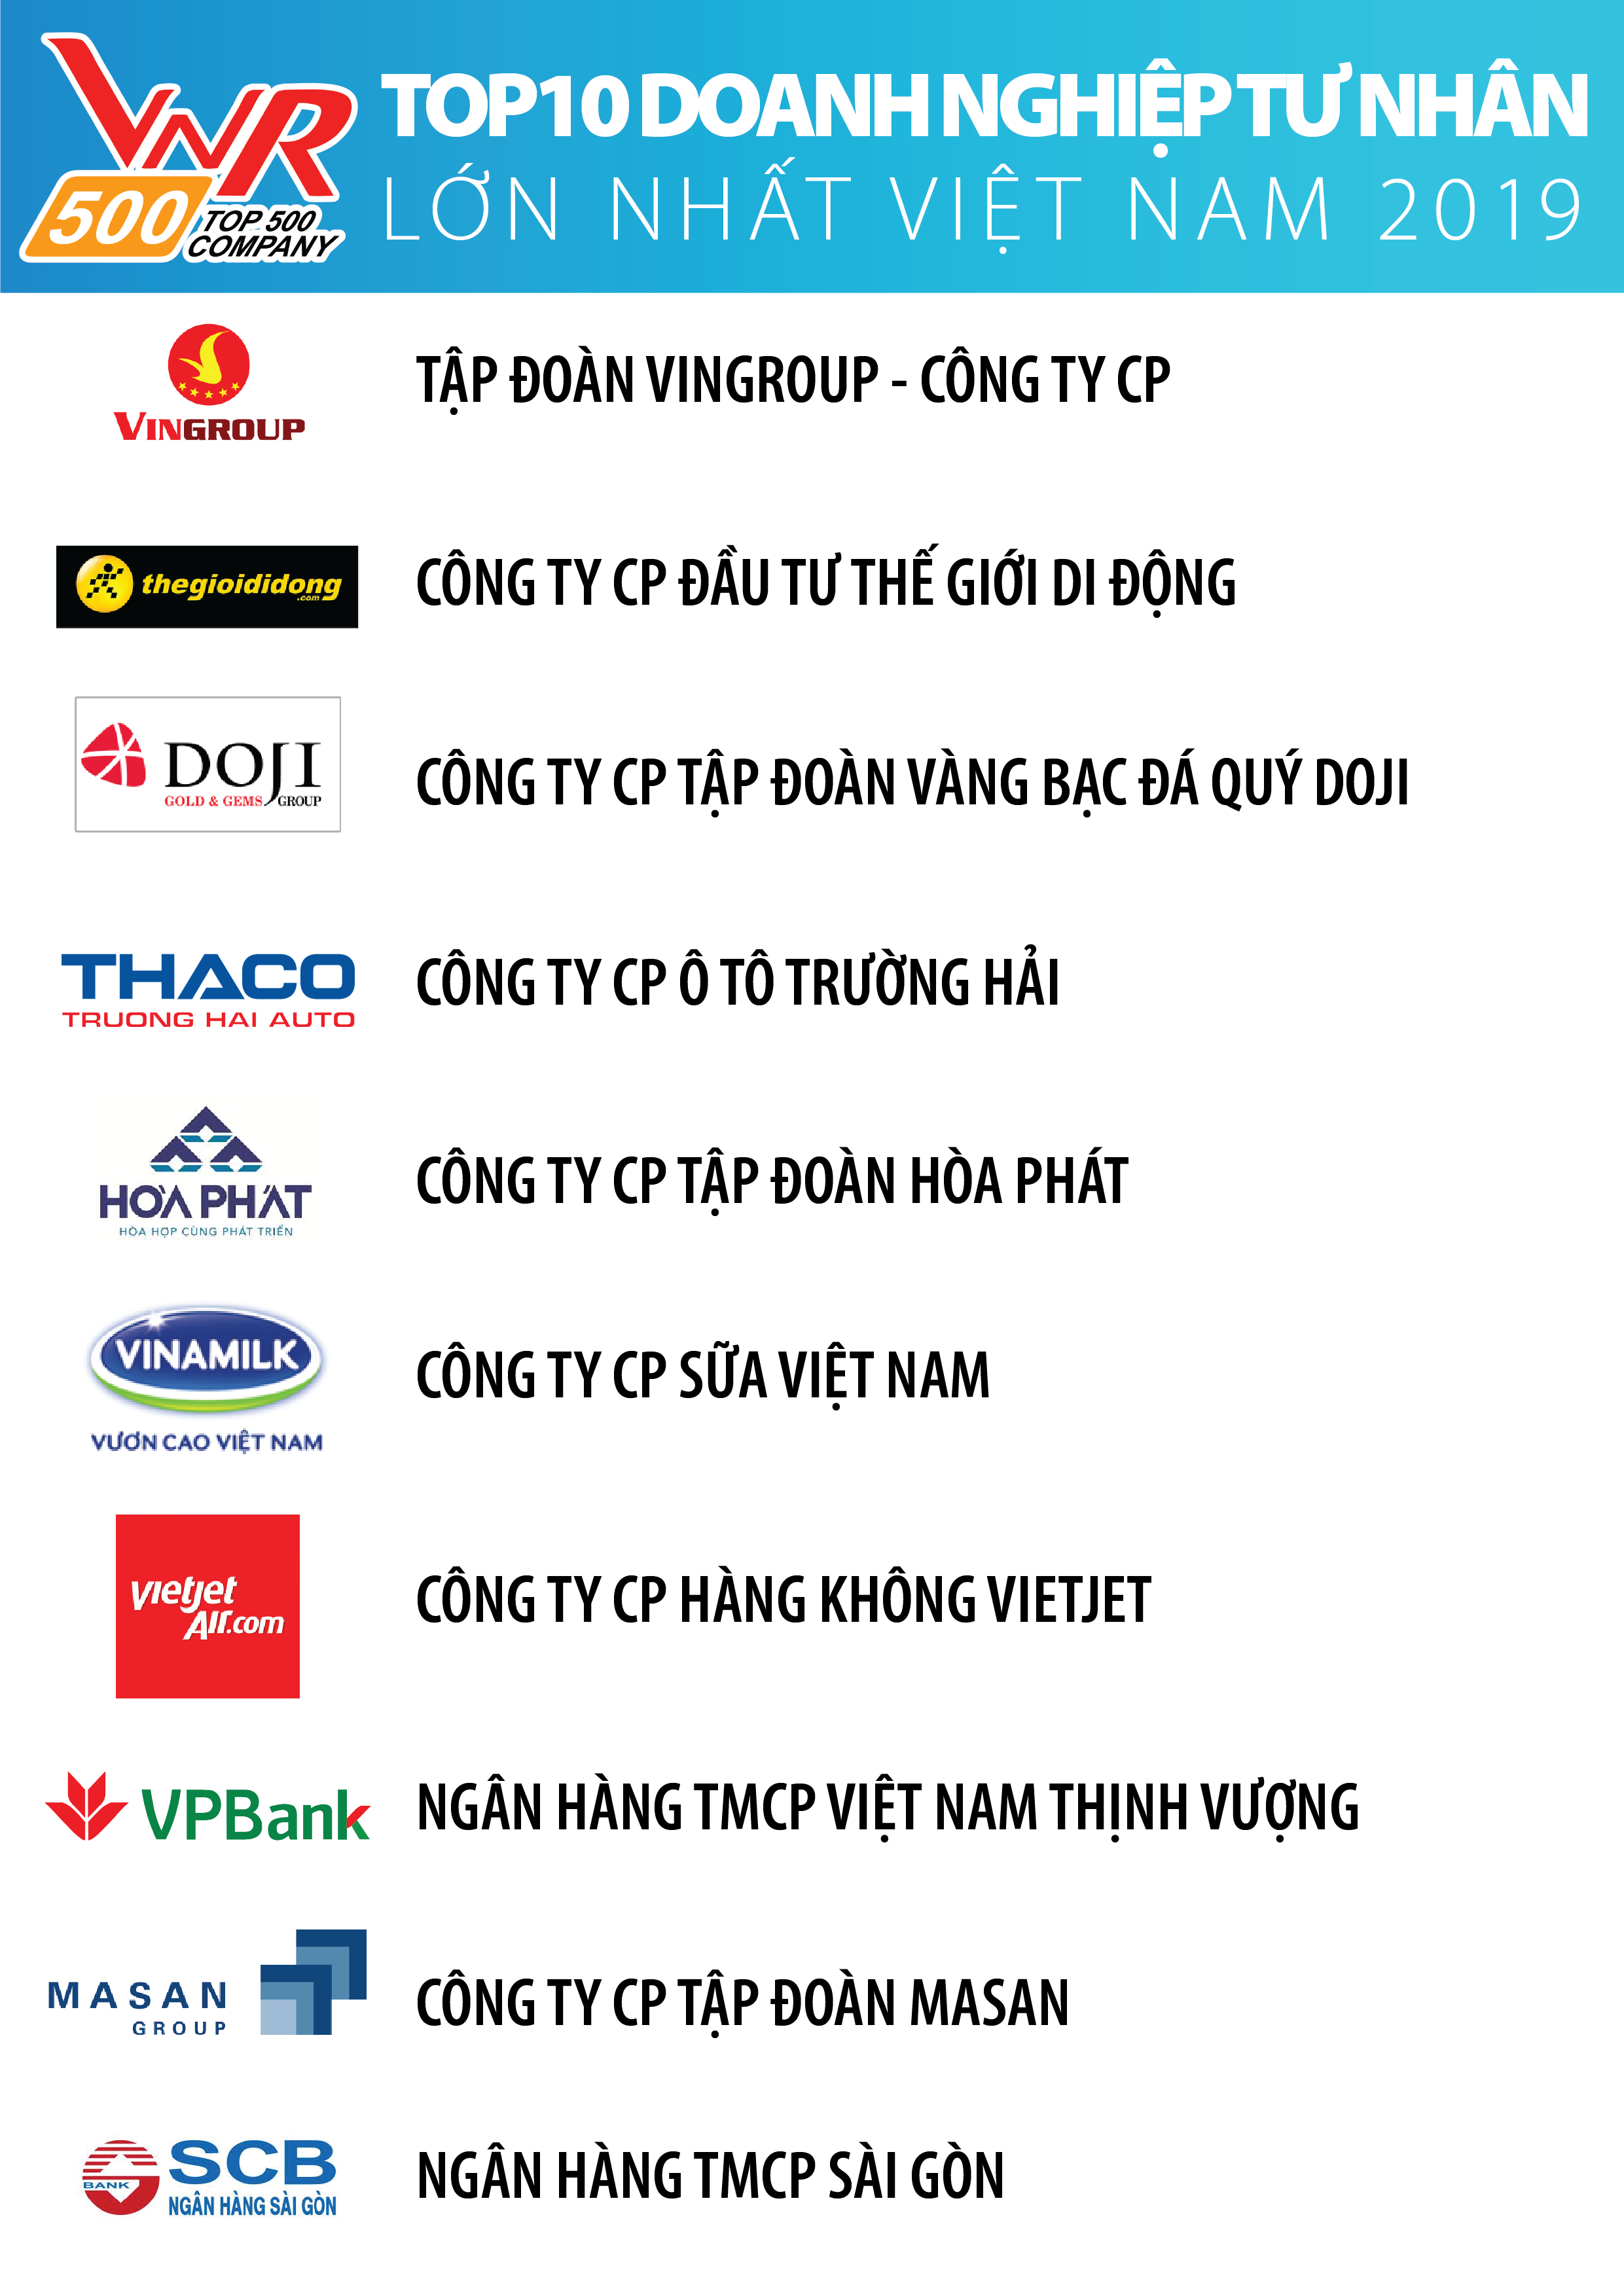 Xếp hạng Top 500 Doanh nghiệp lớn nhất Việt Nam năm 2019